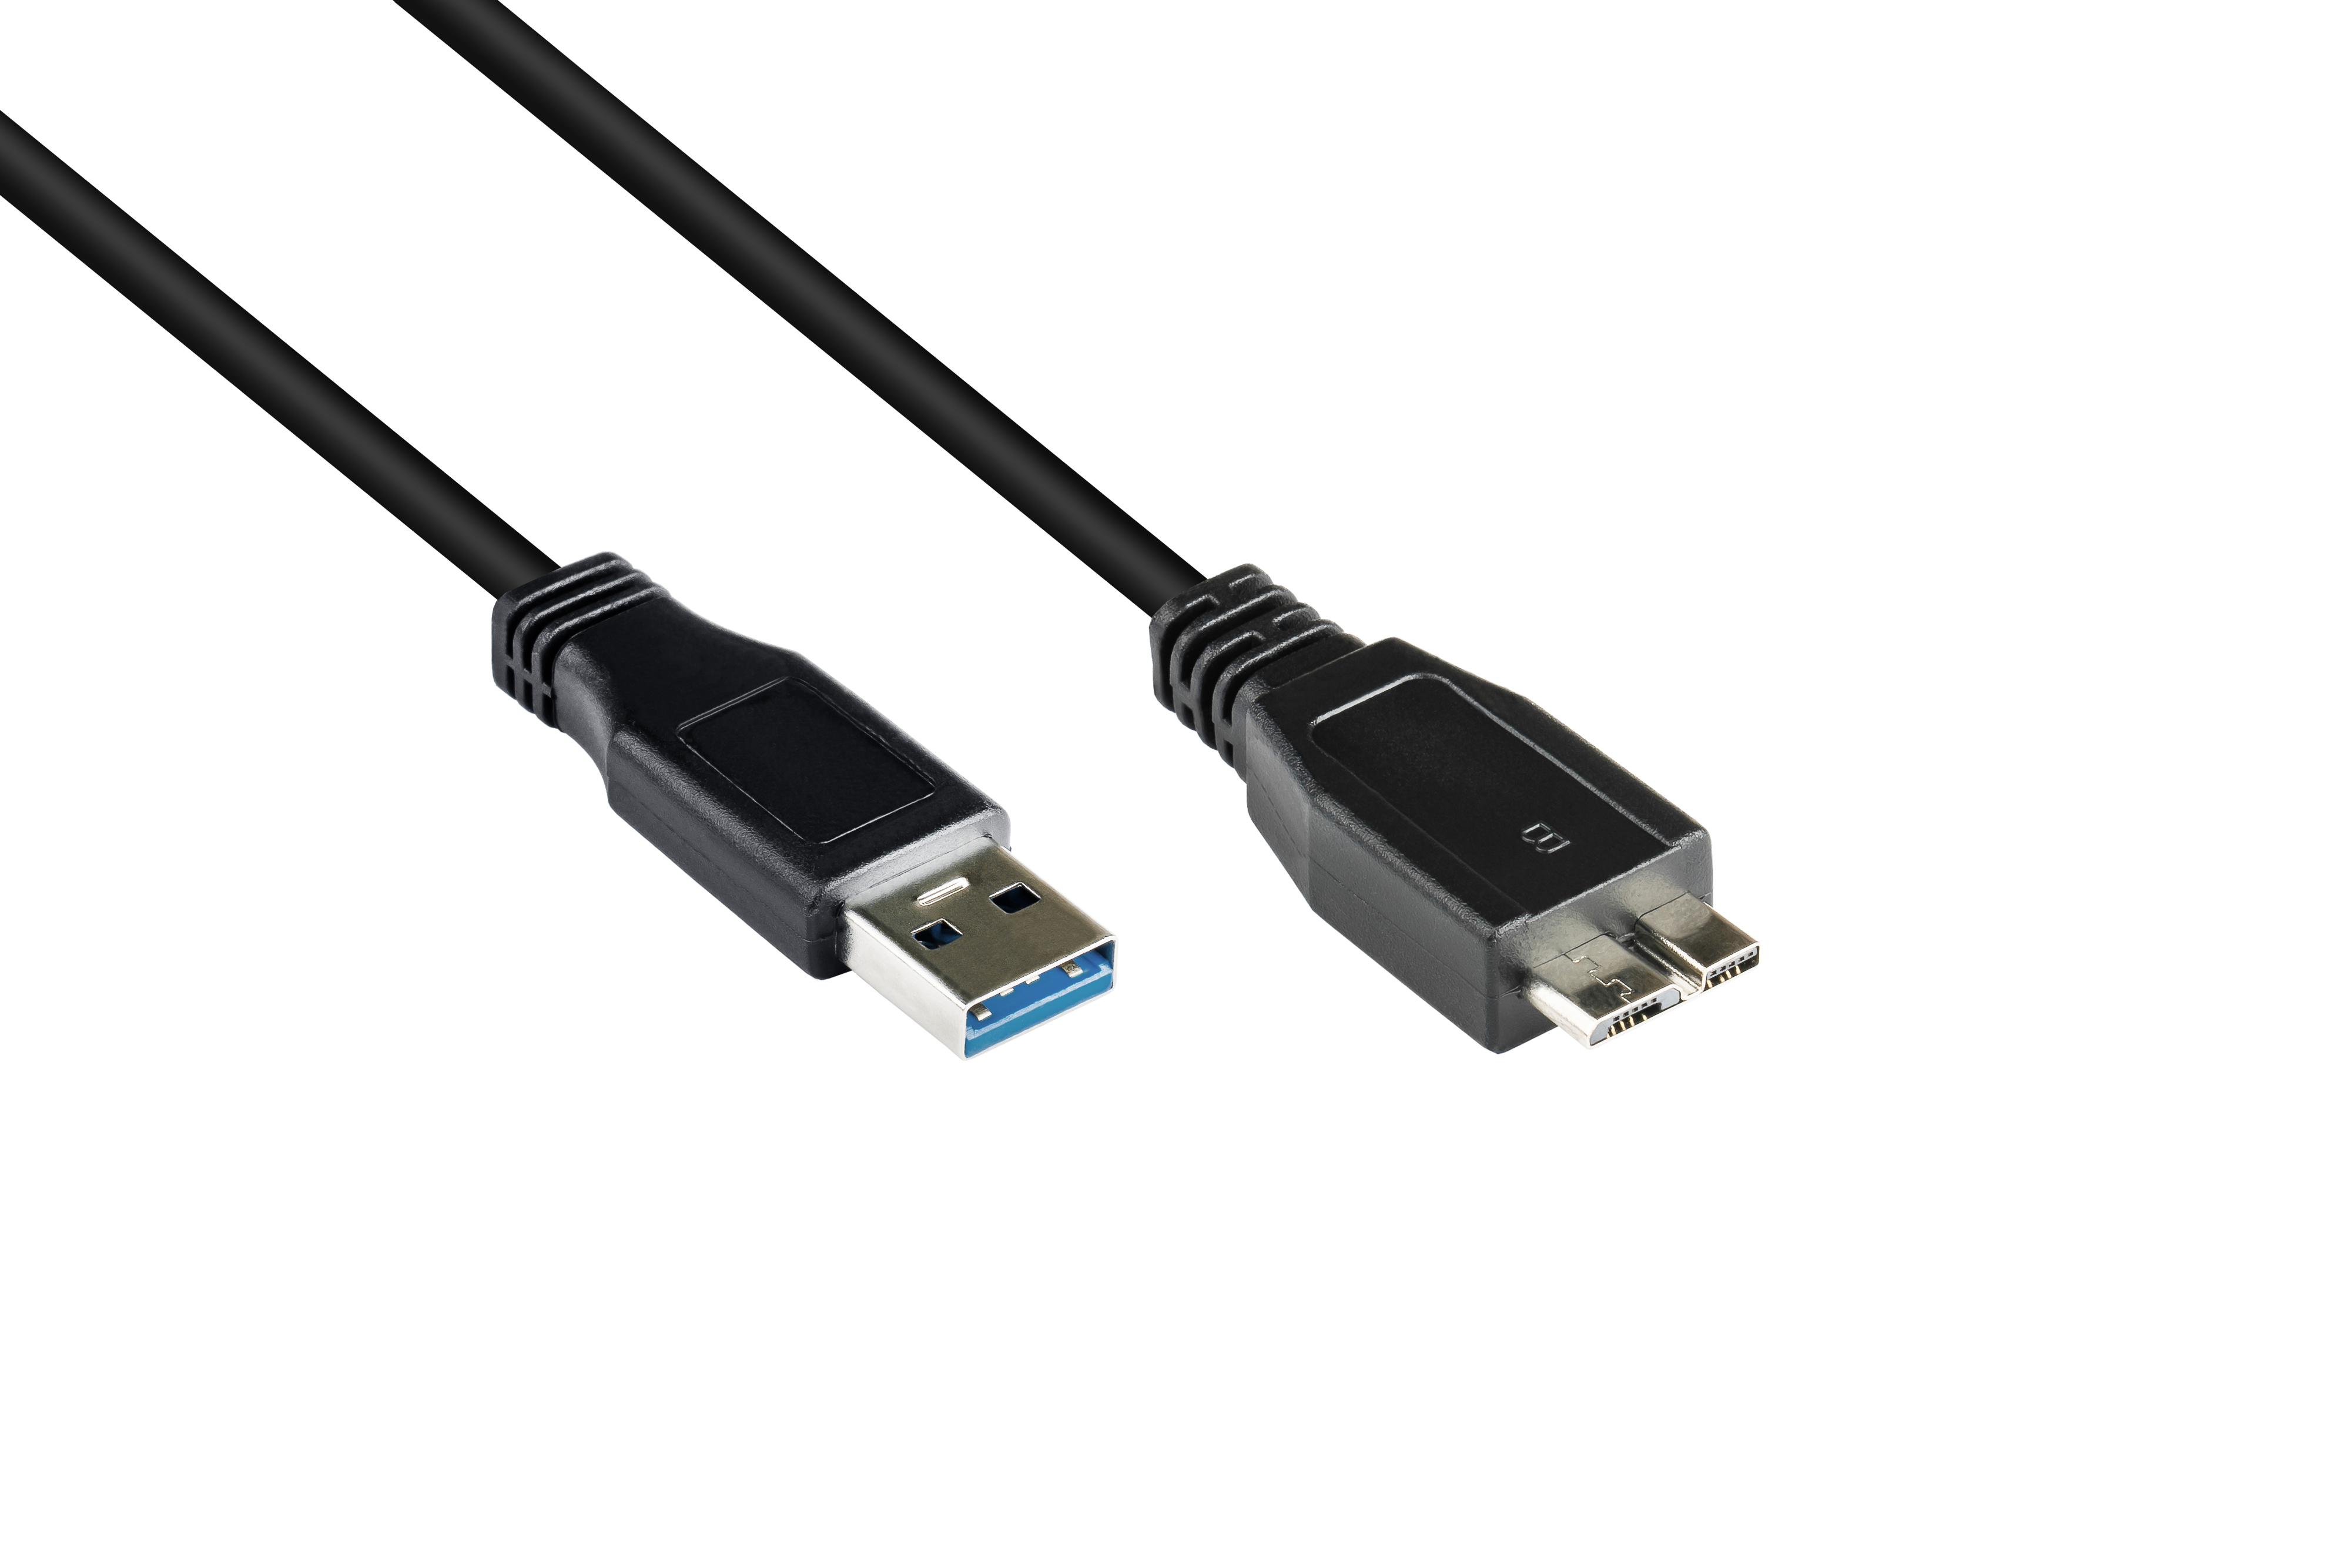 Stecker Anschlusskabel 3.0 B, an CONNECTIONS schwarz Stecker Micro USB GOOD A